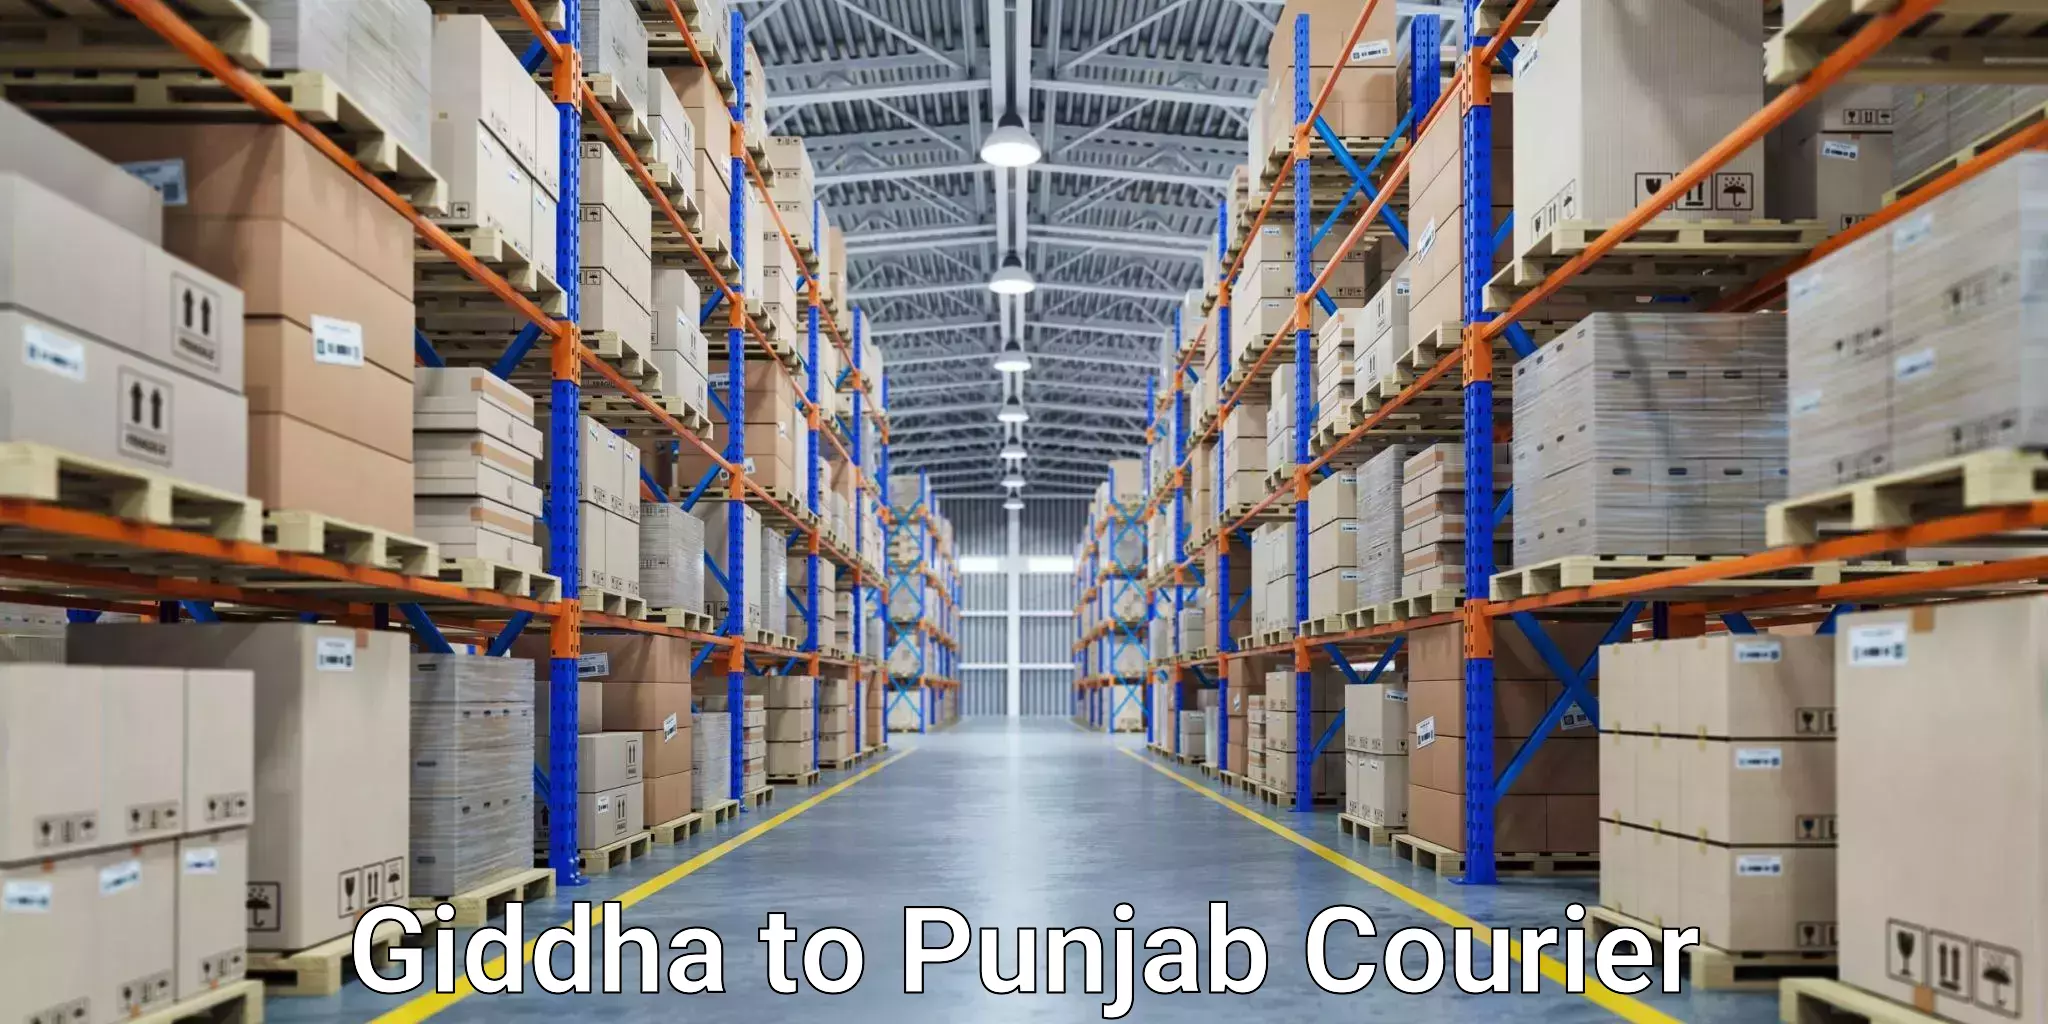 Reliable shipping partners Giddha to Punjab